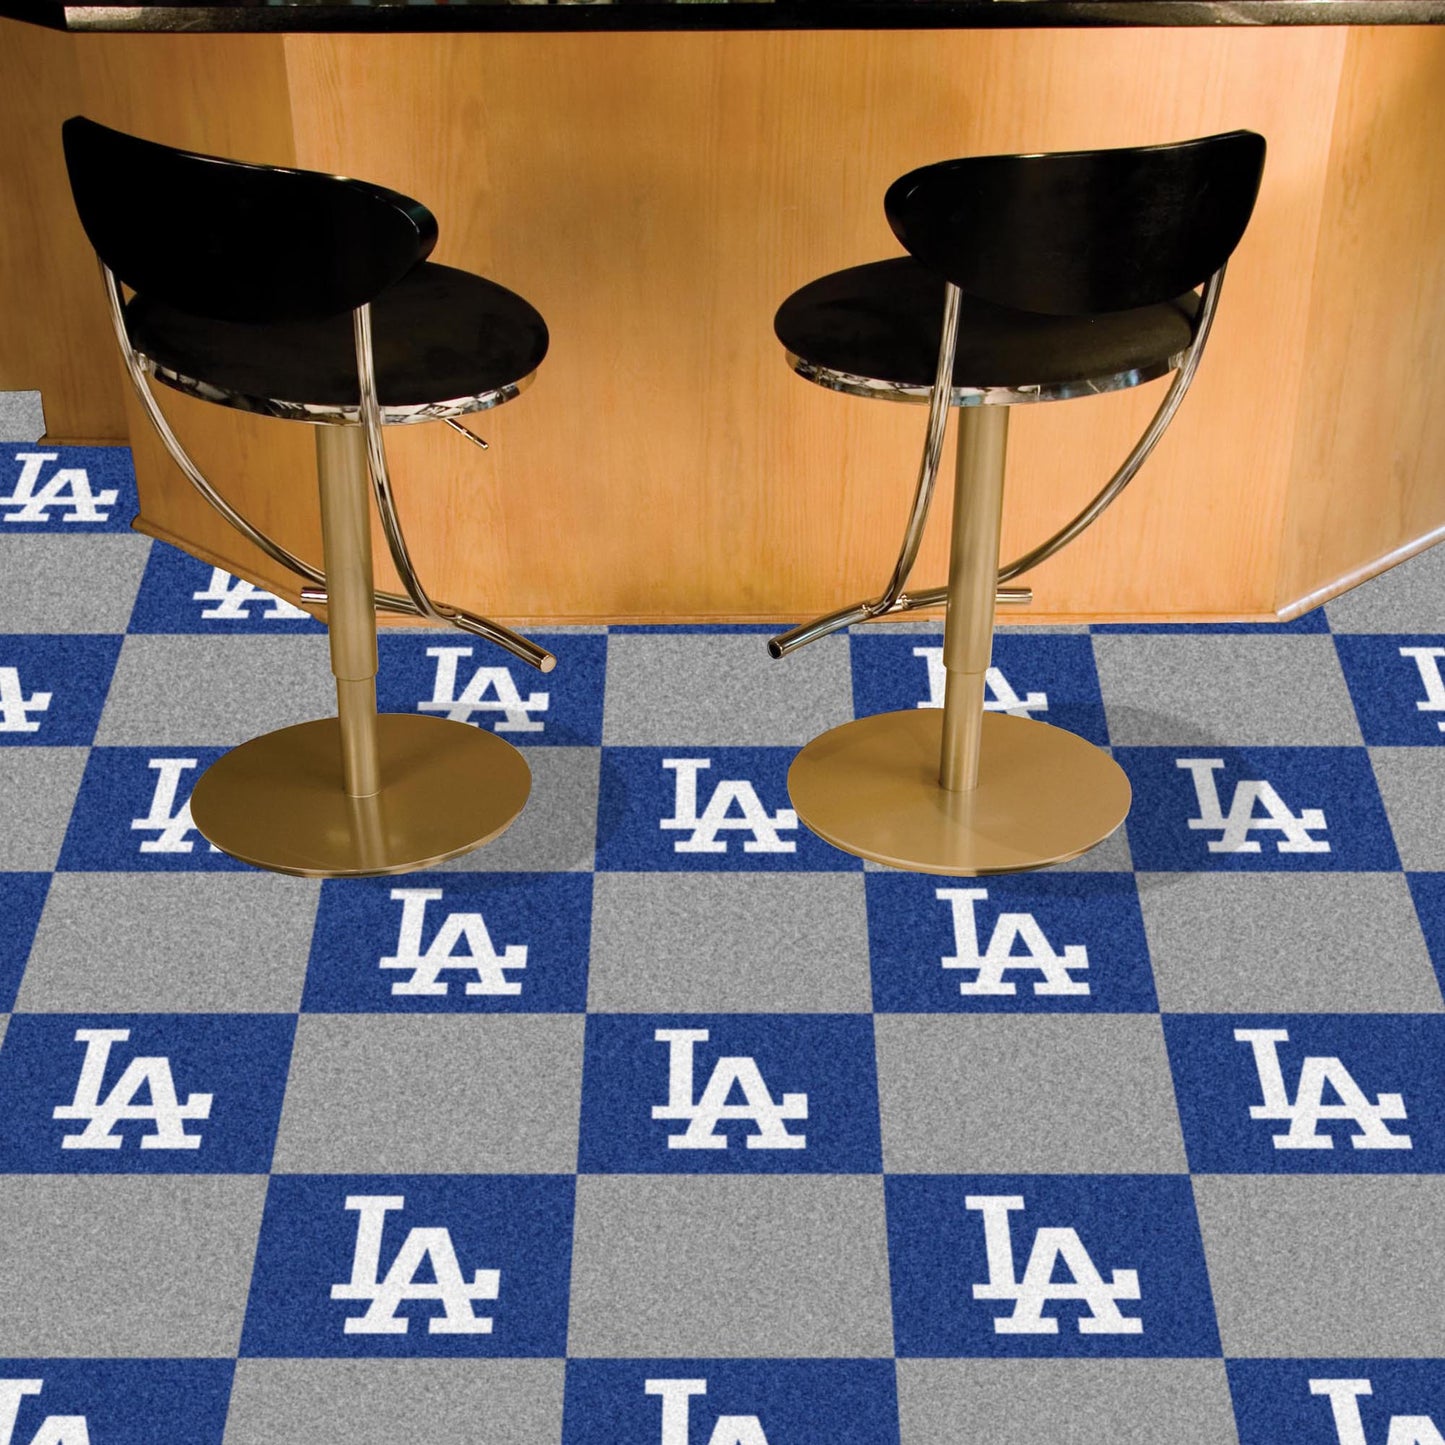 Los Angeles Dodgers Team Carpet Tiles - 45 Sq Ft. - Blue & Gray Tiles